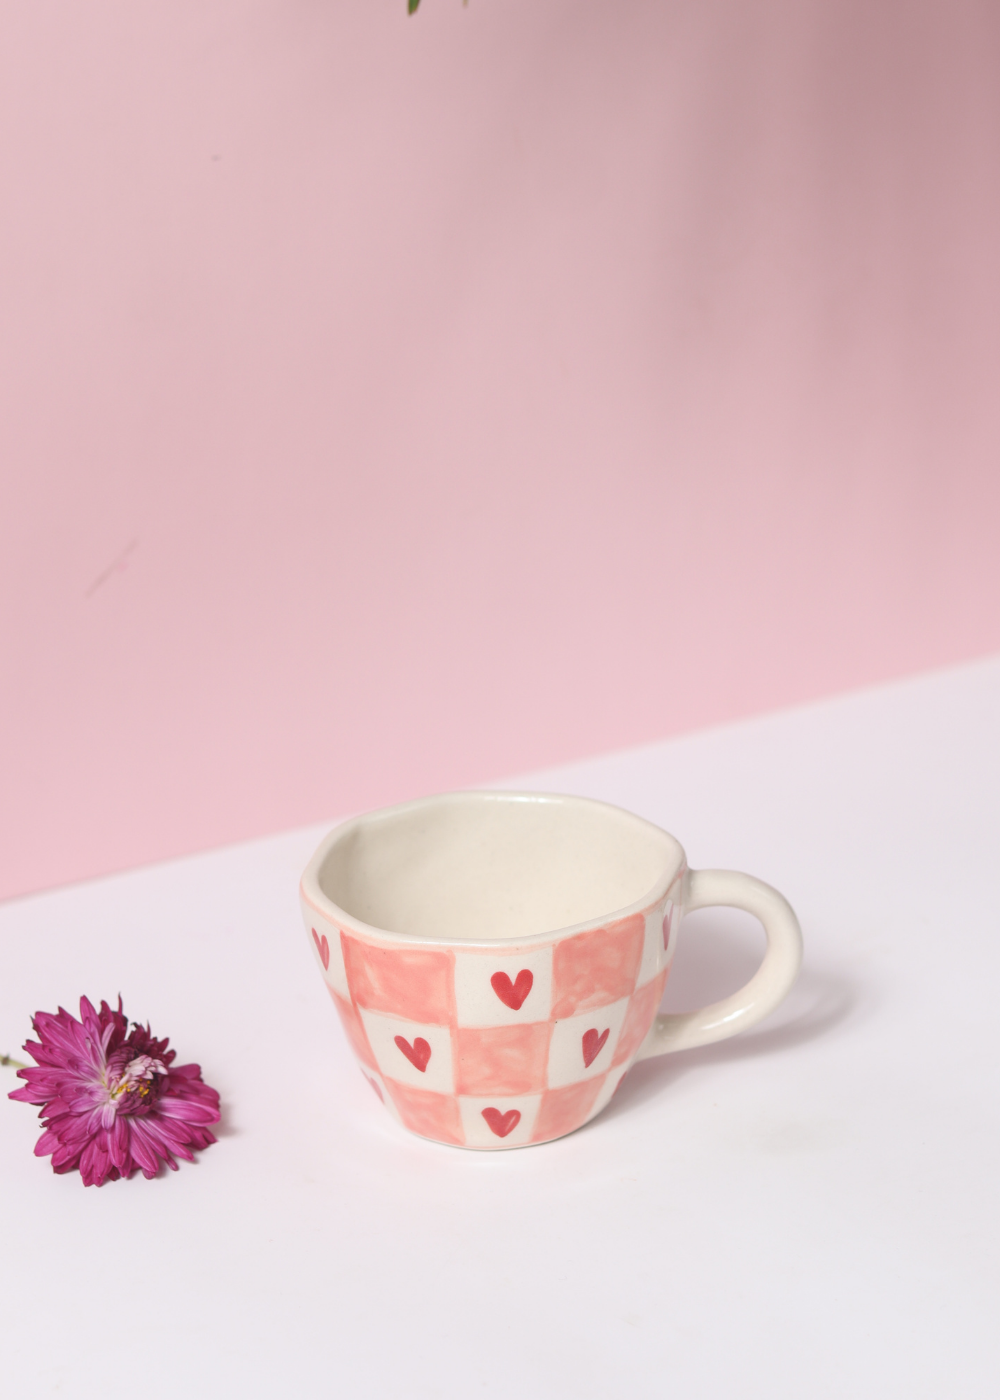 handmade chequered heart mug with beautiful heart